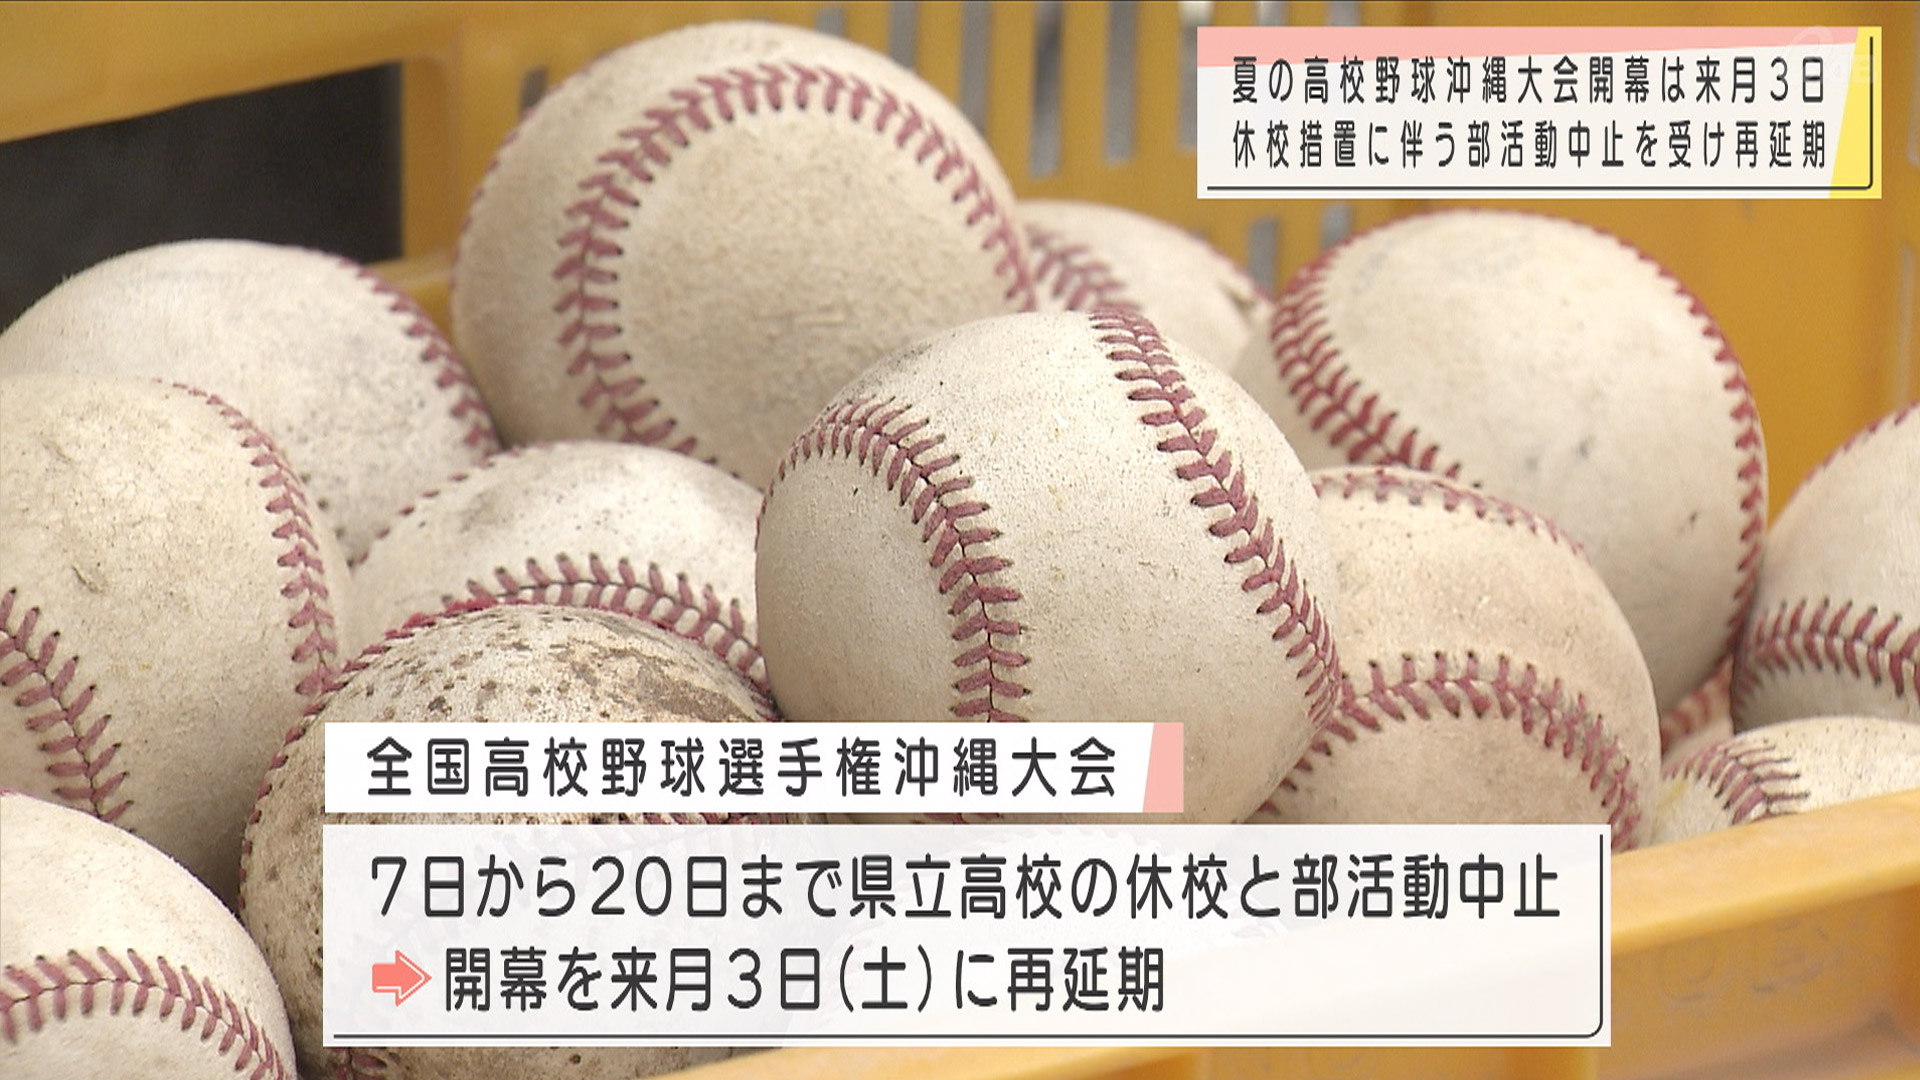 夏の高校野球沖縄大会 開幕再延期